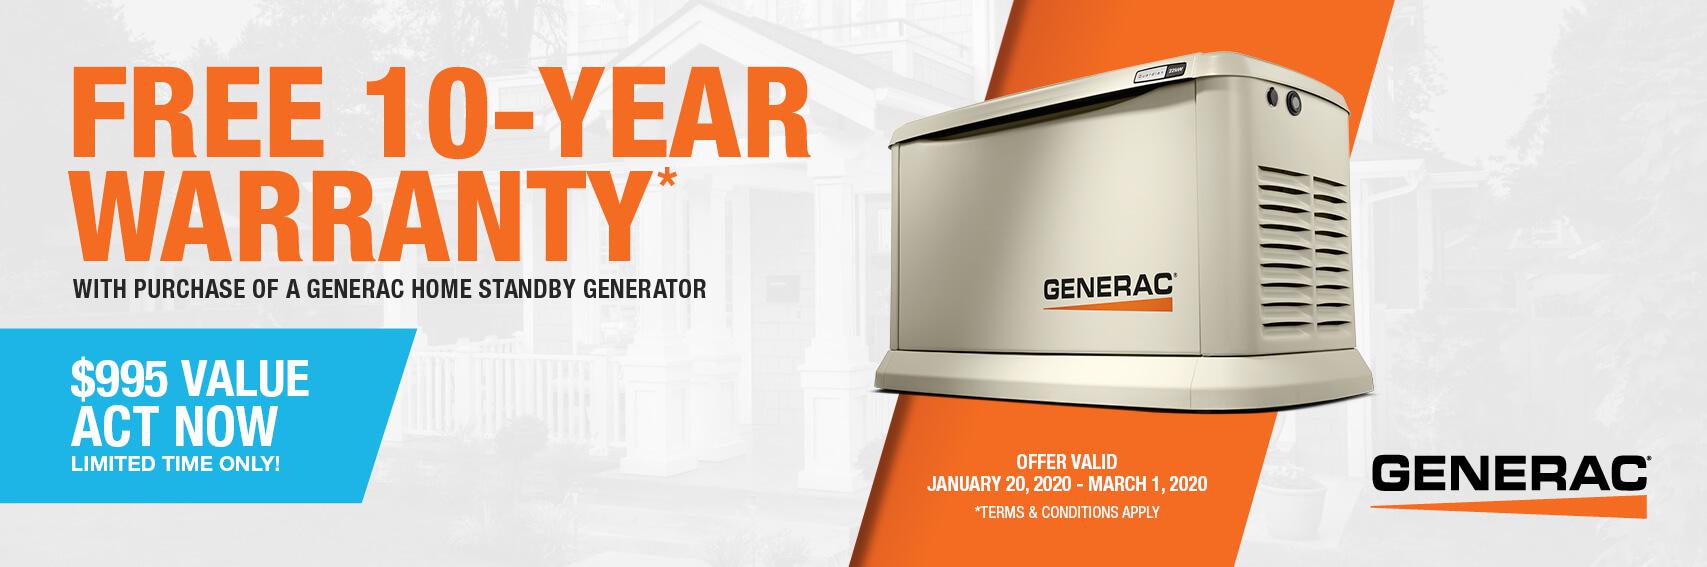 Homestandby Generator Deal | Warranty Offer | Generac Dealer | SPRINGFIELD, IL